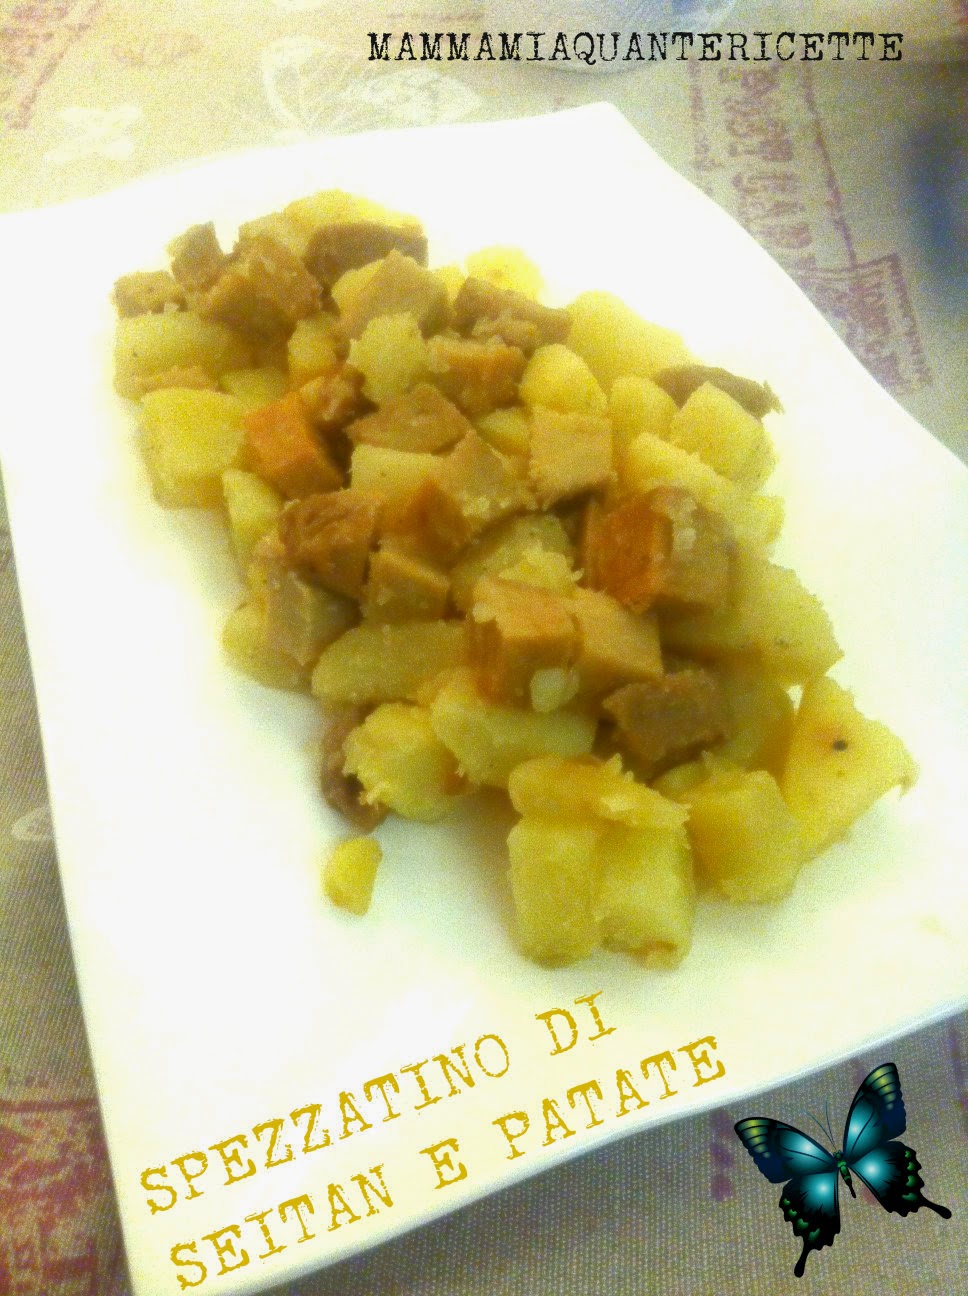 spezzatino di seitan e patate